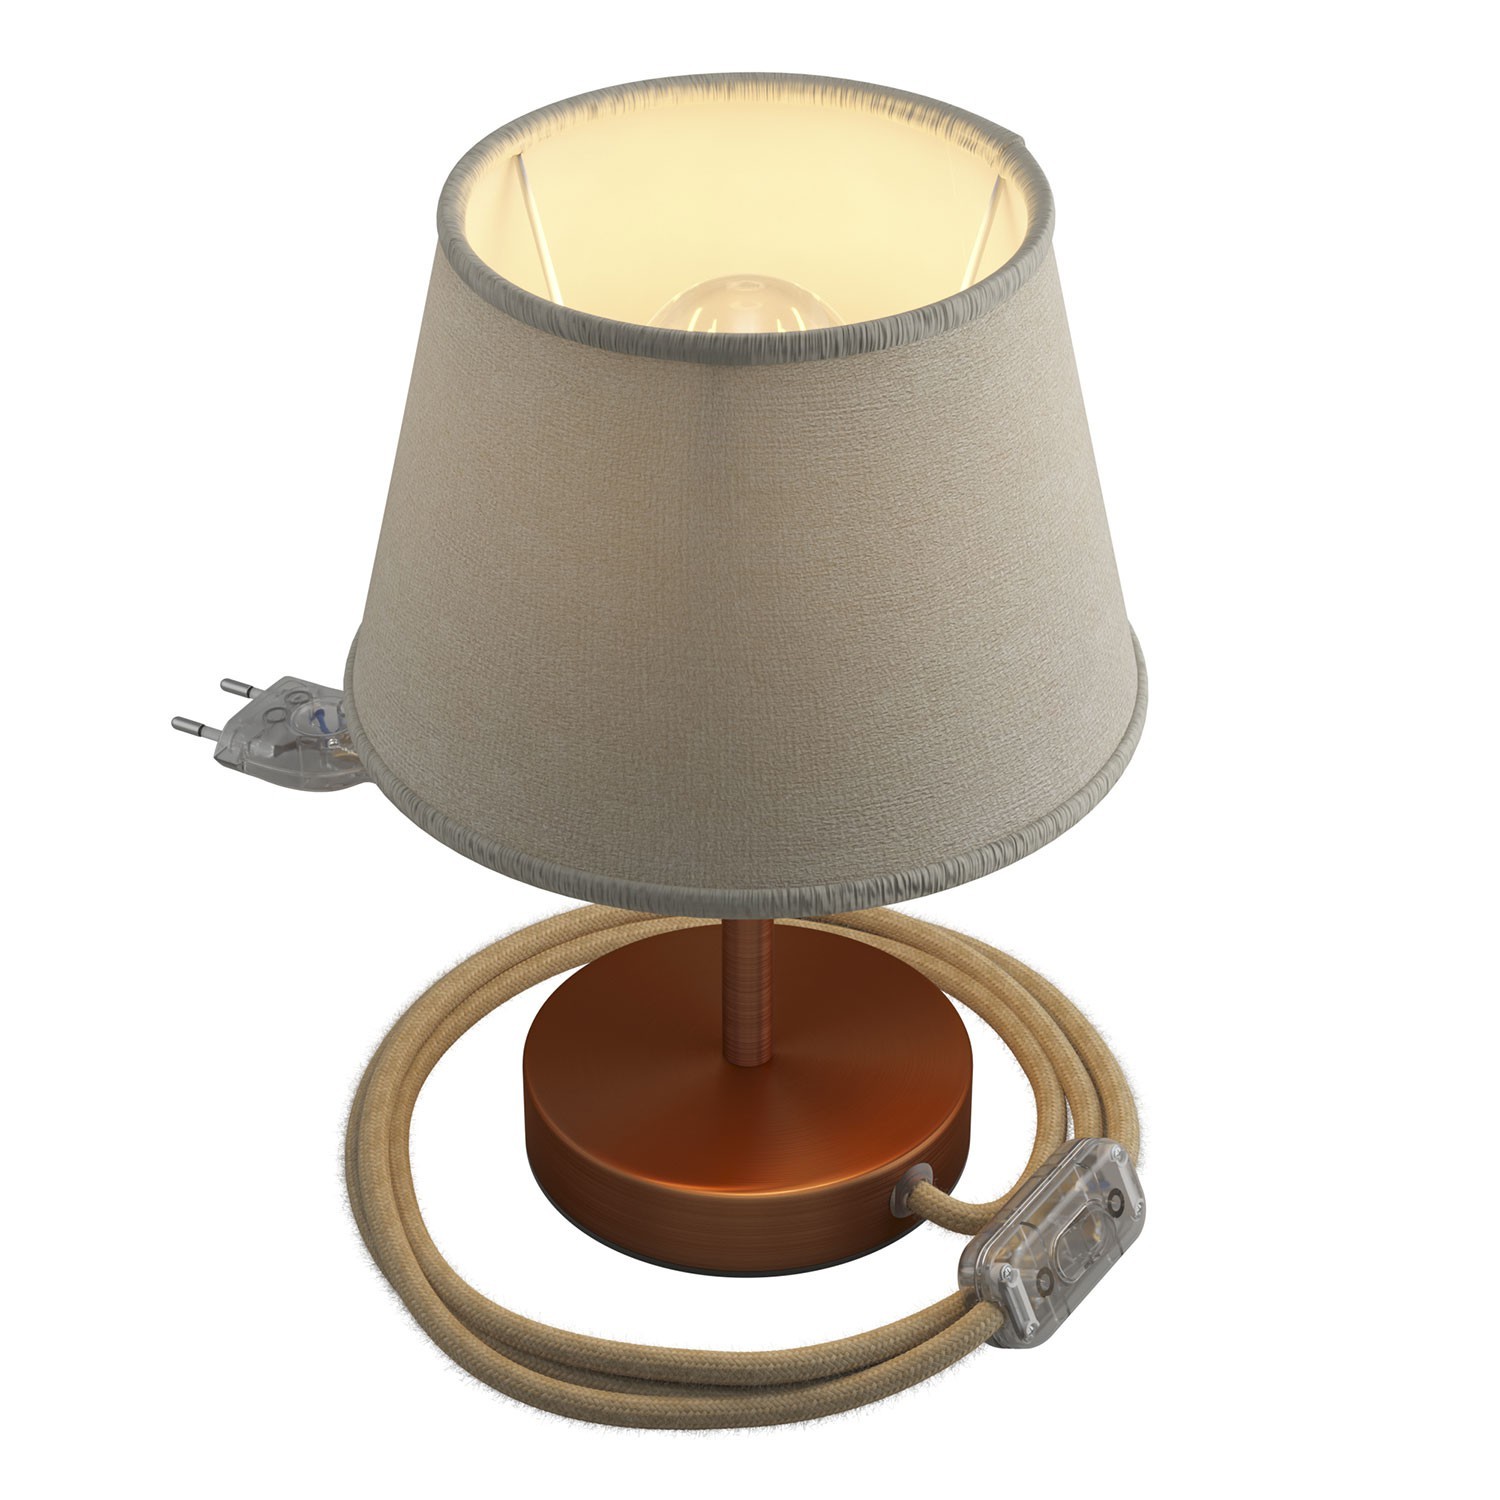 Alzaluce avec abat-jour Impero, lampe de table en métal avec fiche à deux pôles, câble et interrupteur